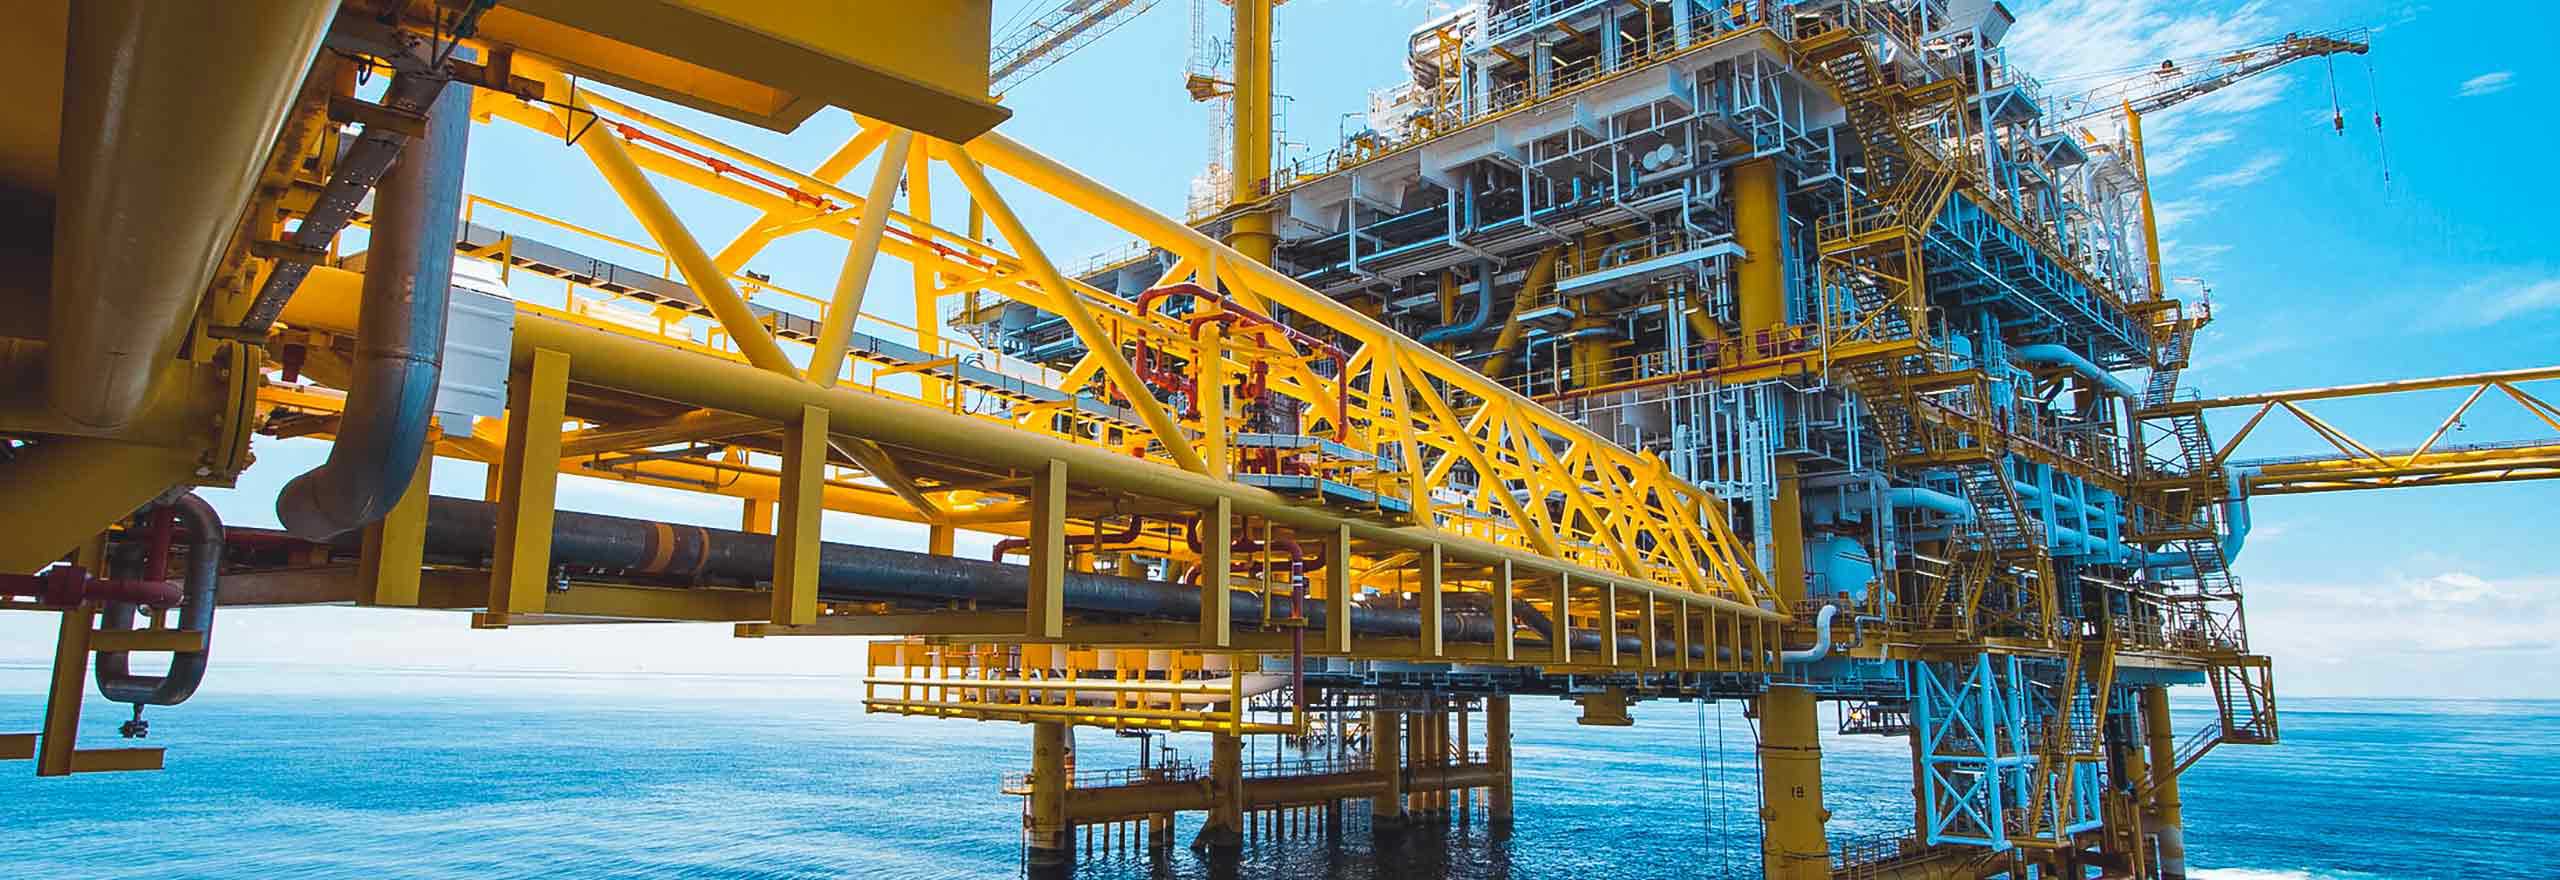 Offshore-Plattform, die Öl- und Gaslösungen von Hexagon nutzt